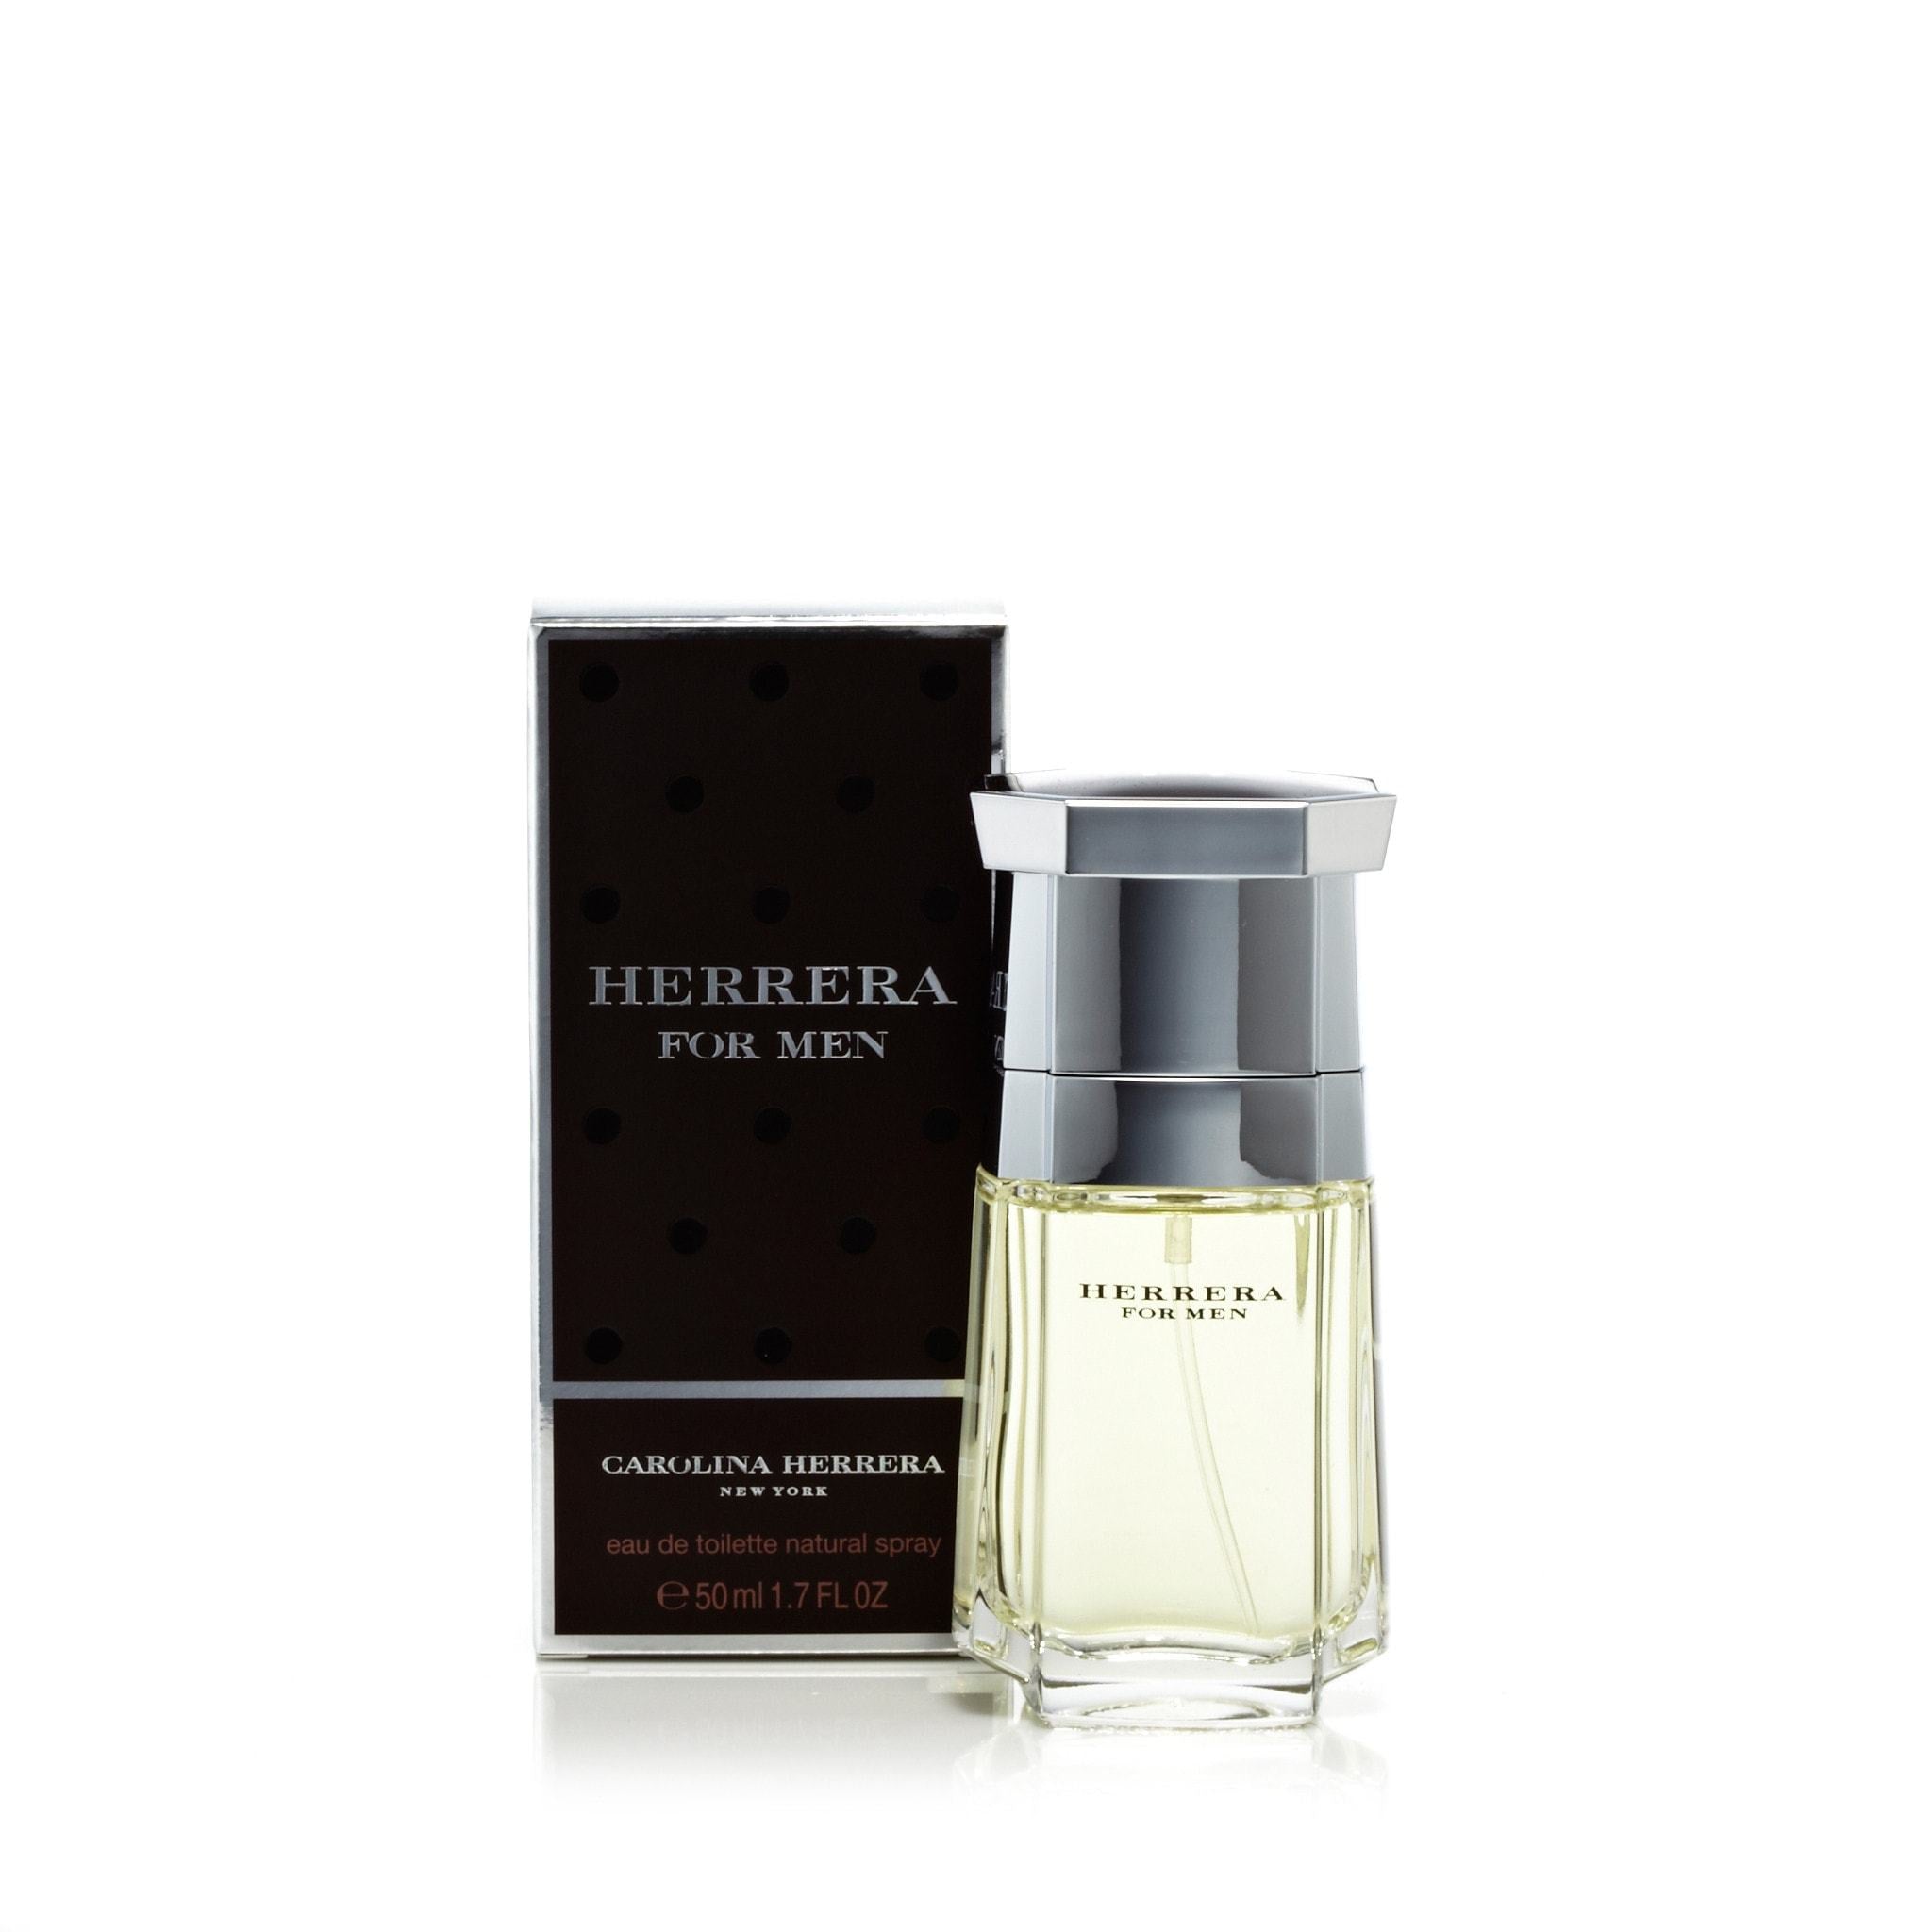 Herrera for Men by Carolina Herrera (Eau de Toilette) » Reviews